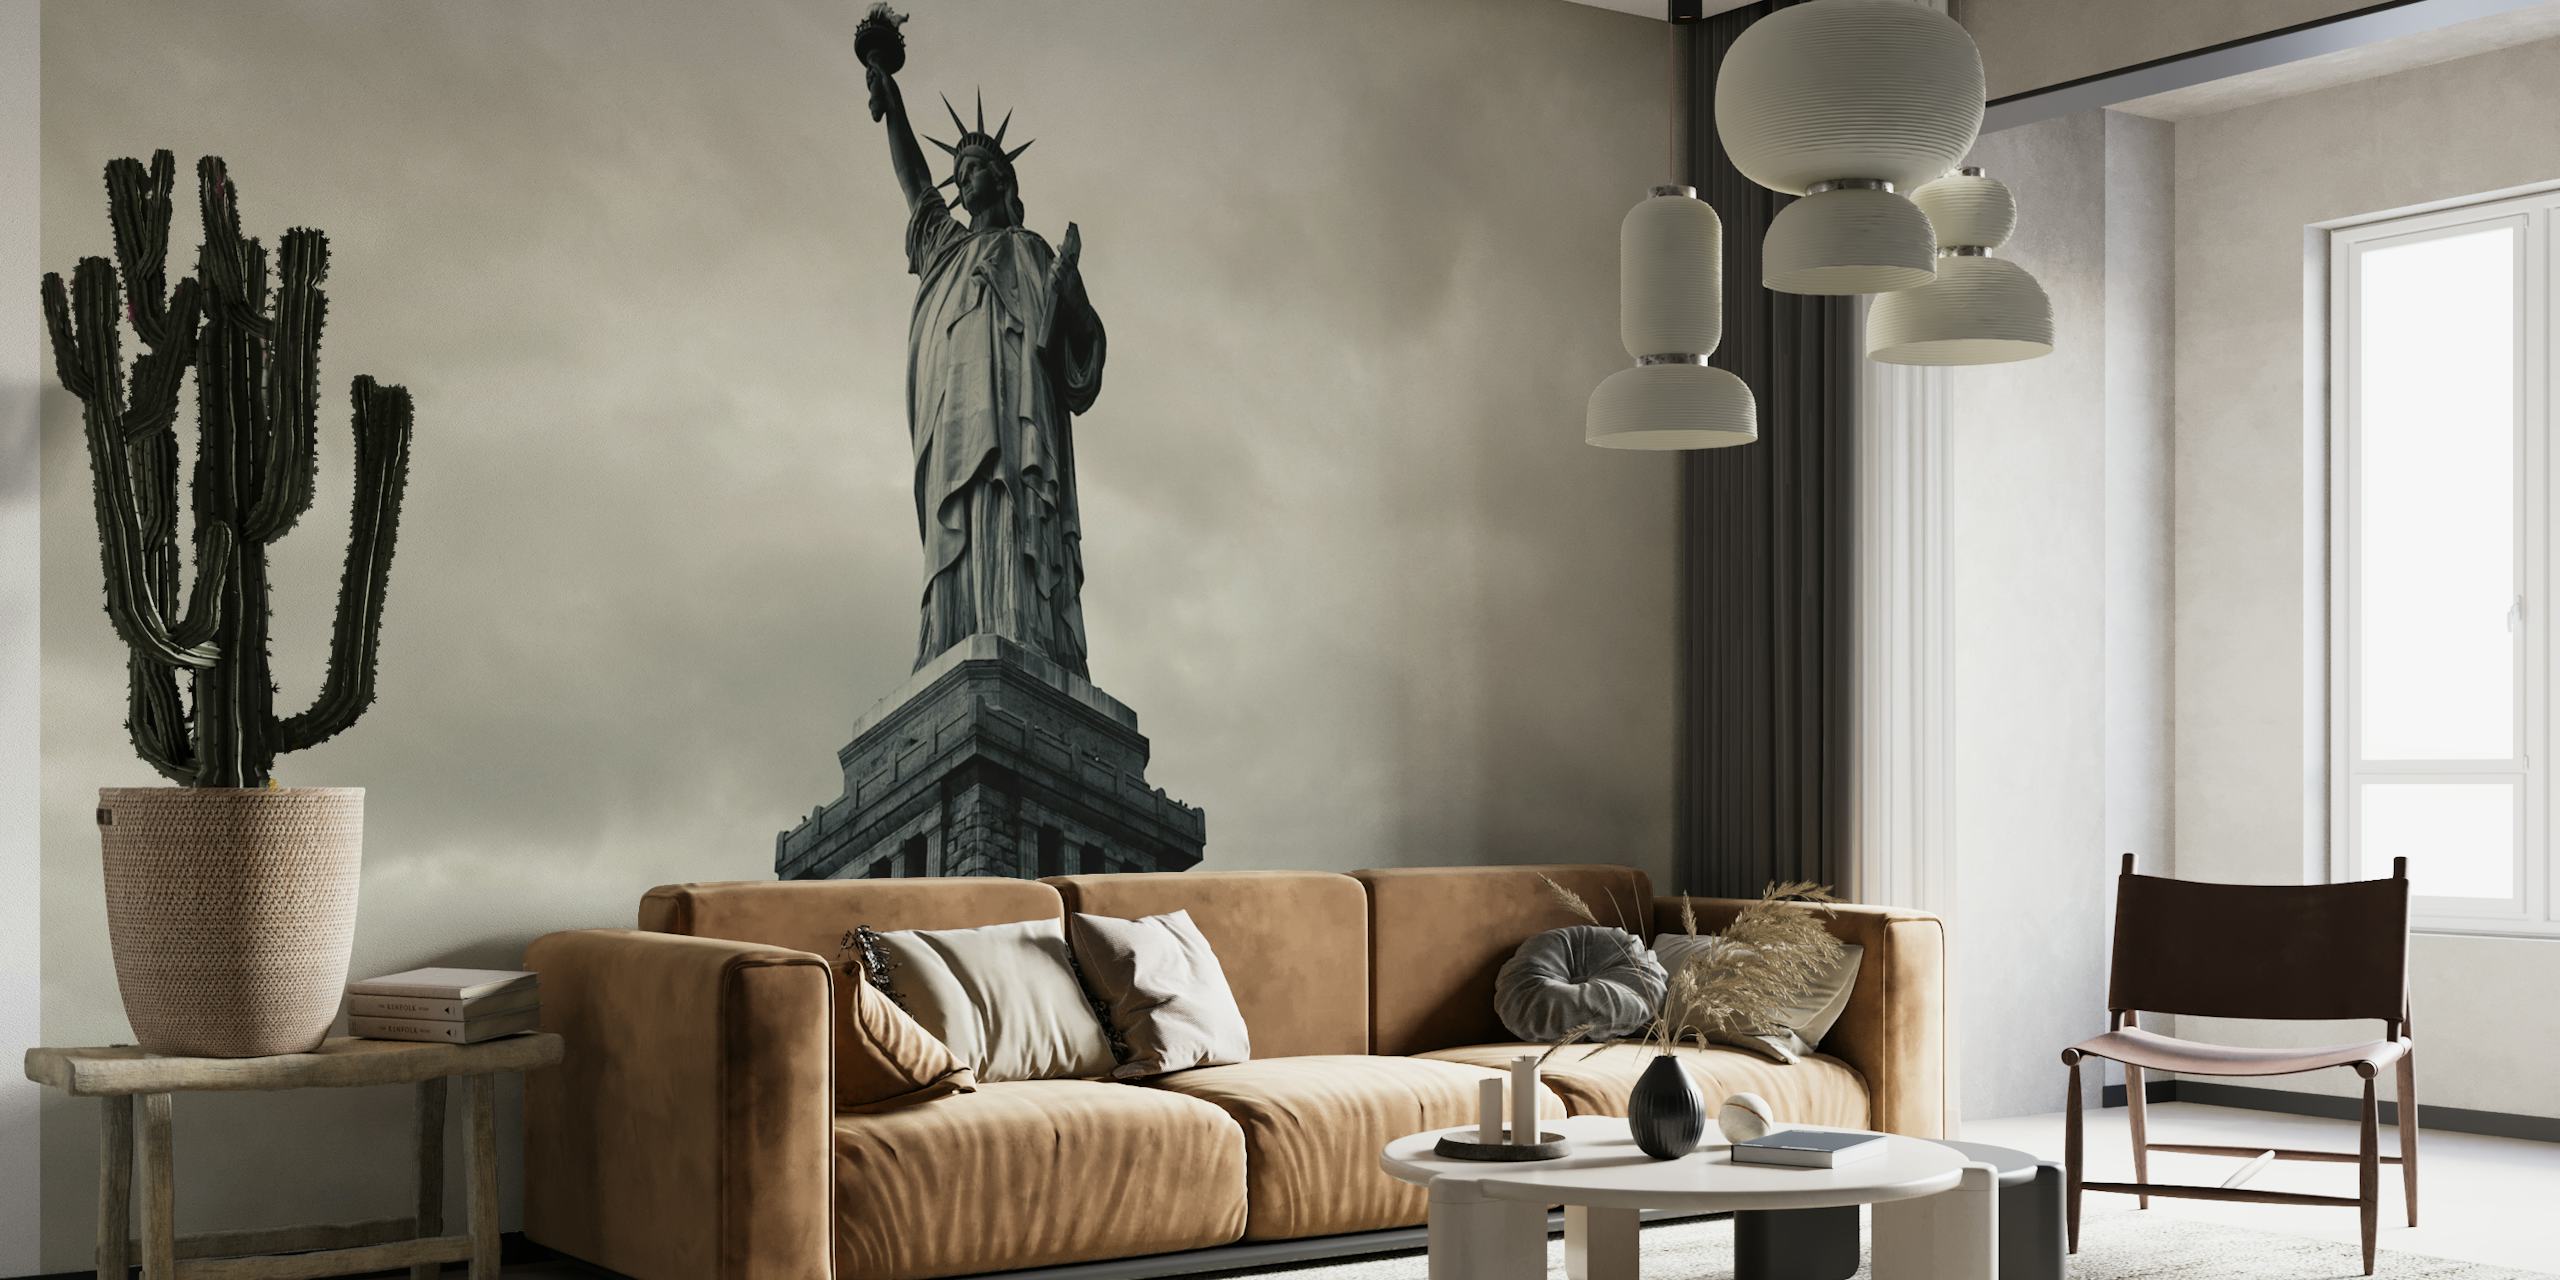 Svart-hvitt veggmaleri av en ikonisk amerikansk statue som symboliserer frihet og patriotisme